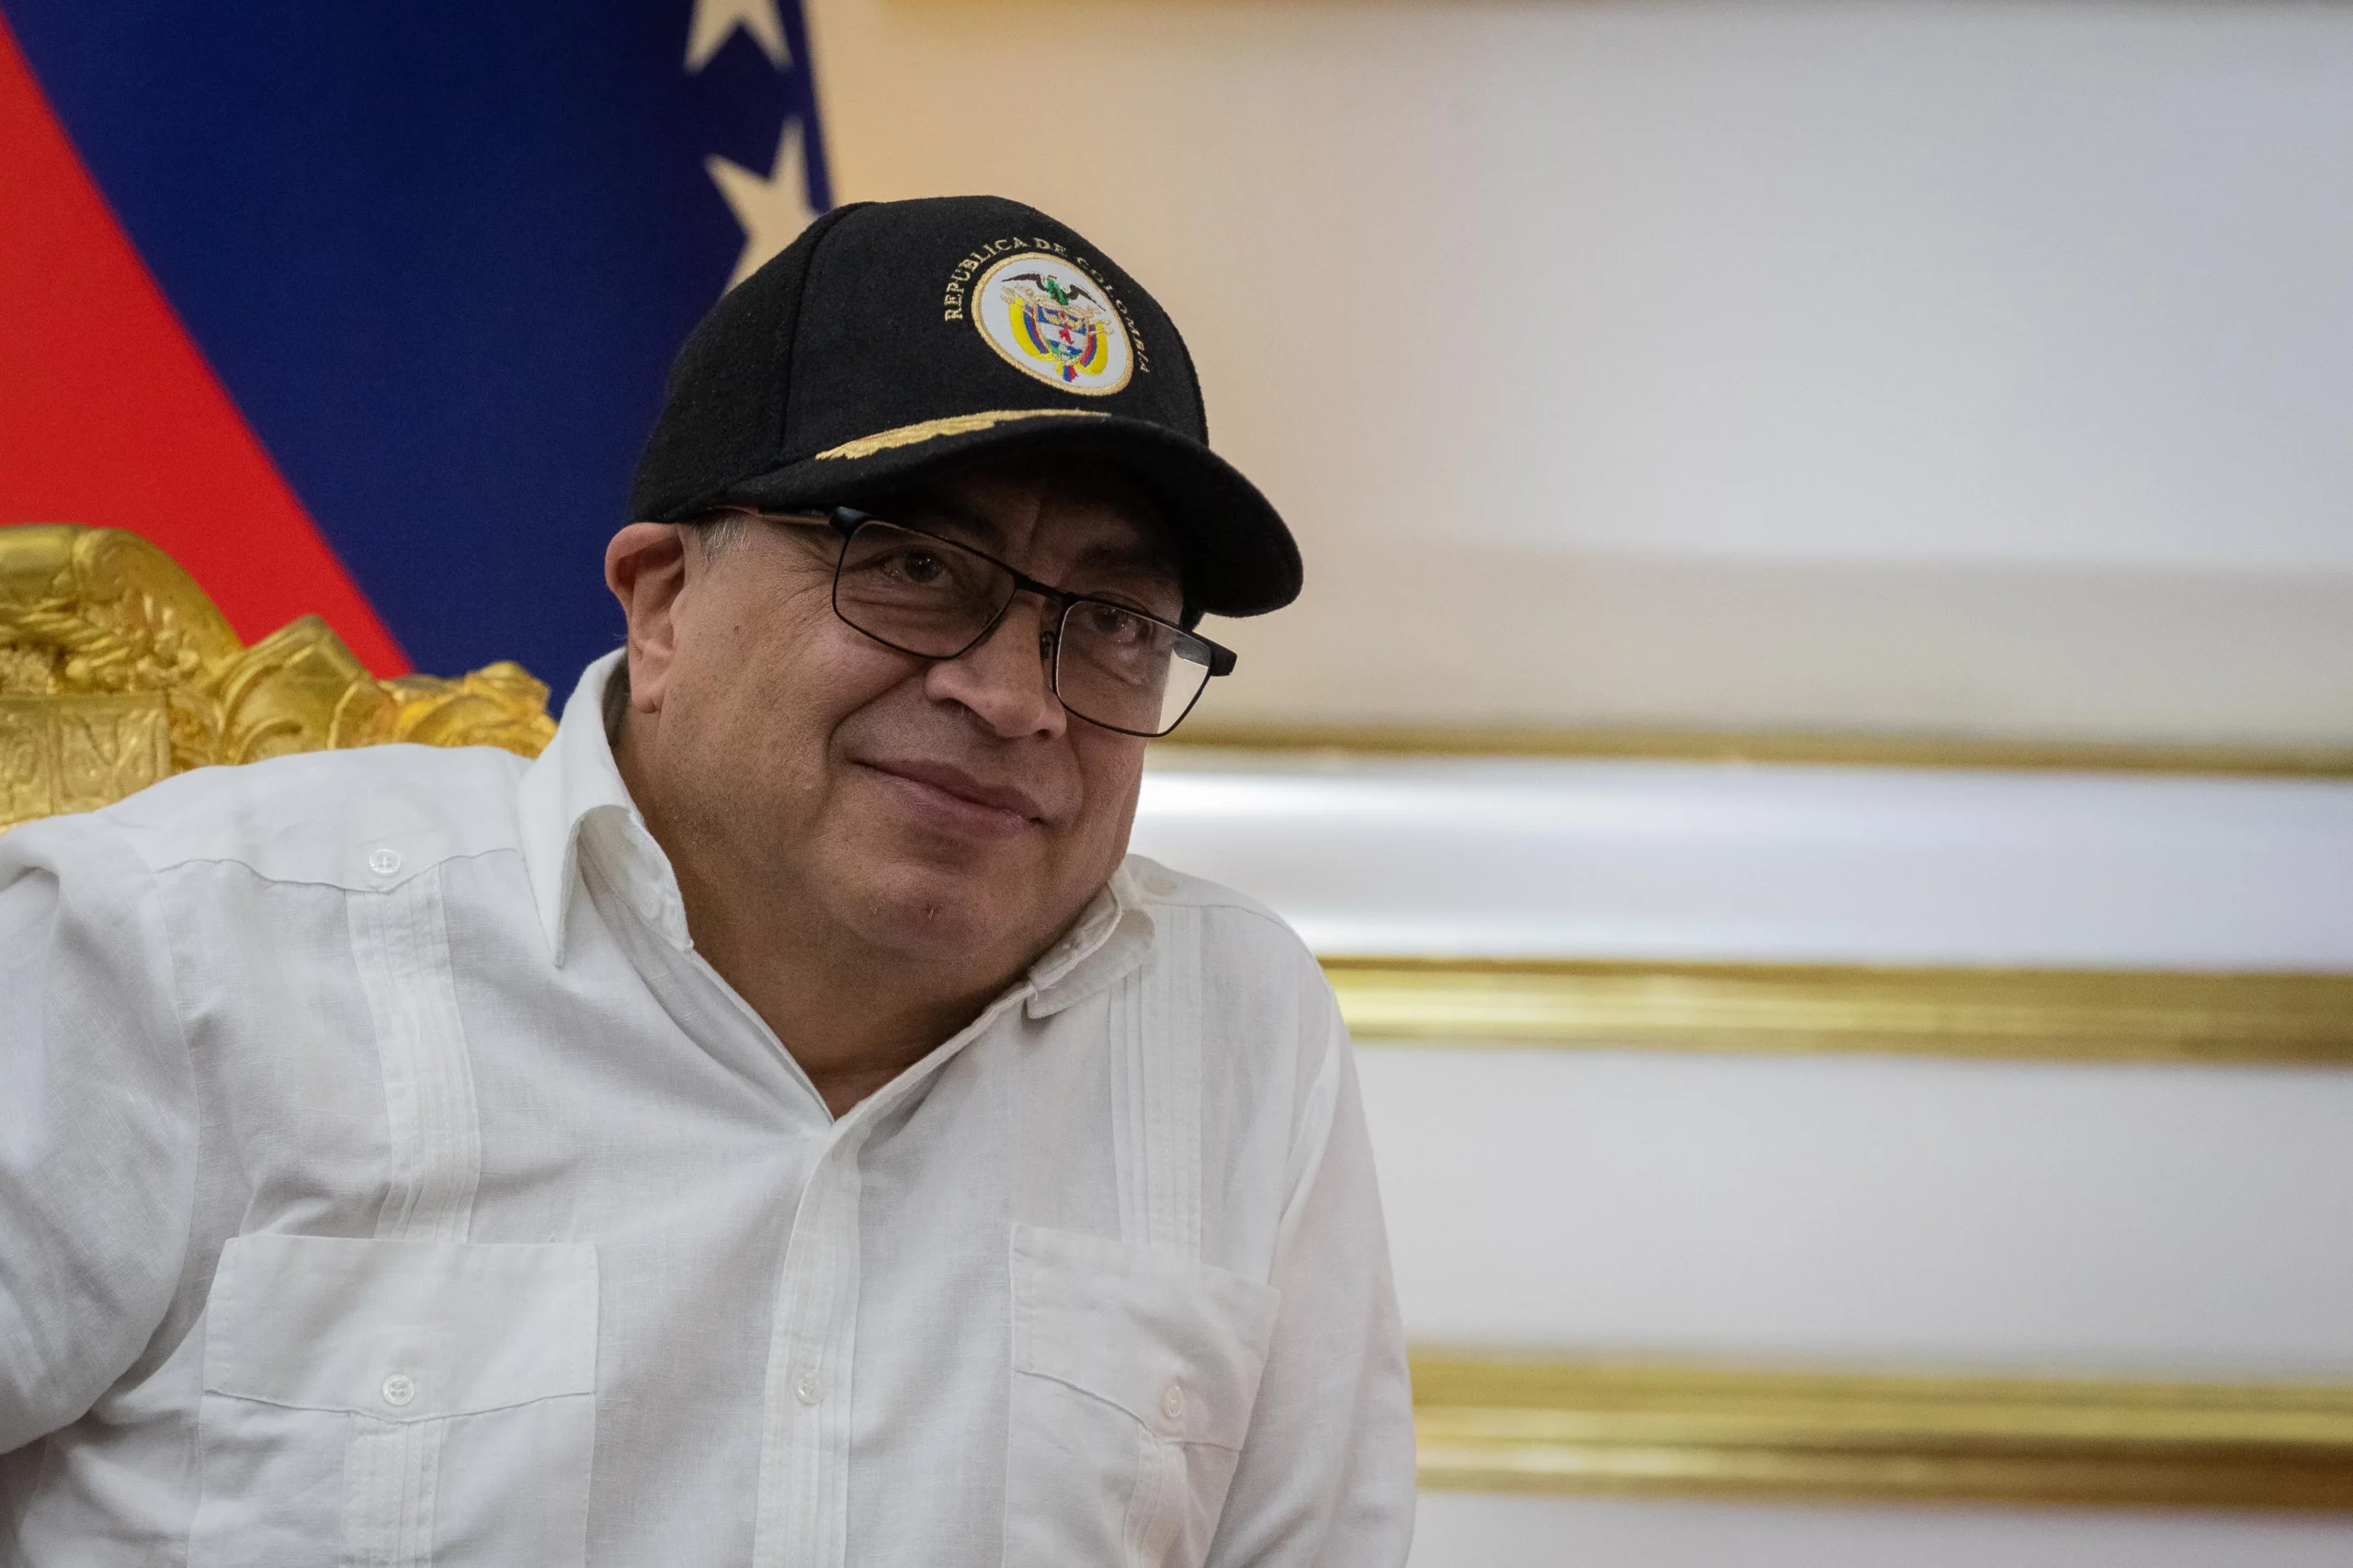 Gustavo Petro les presenta a opositores venezolanos un plan para lograr «la paz política»